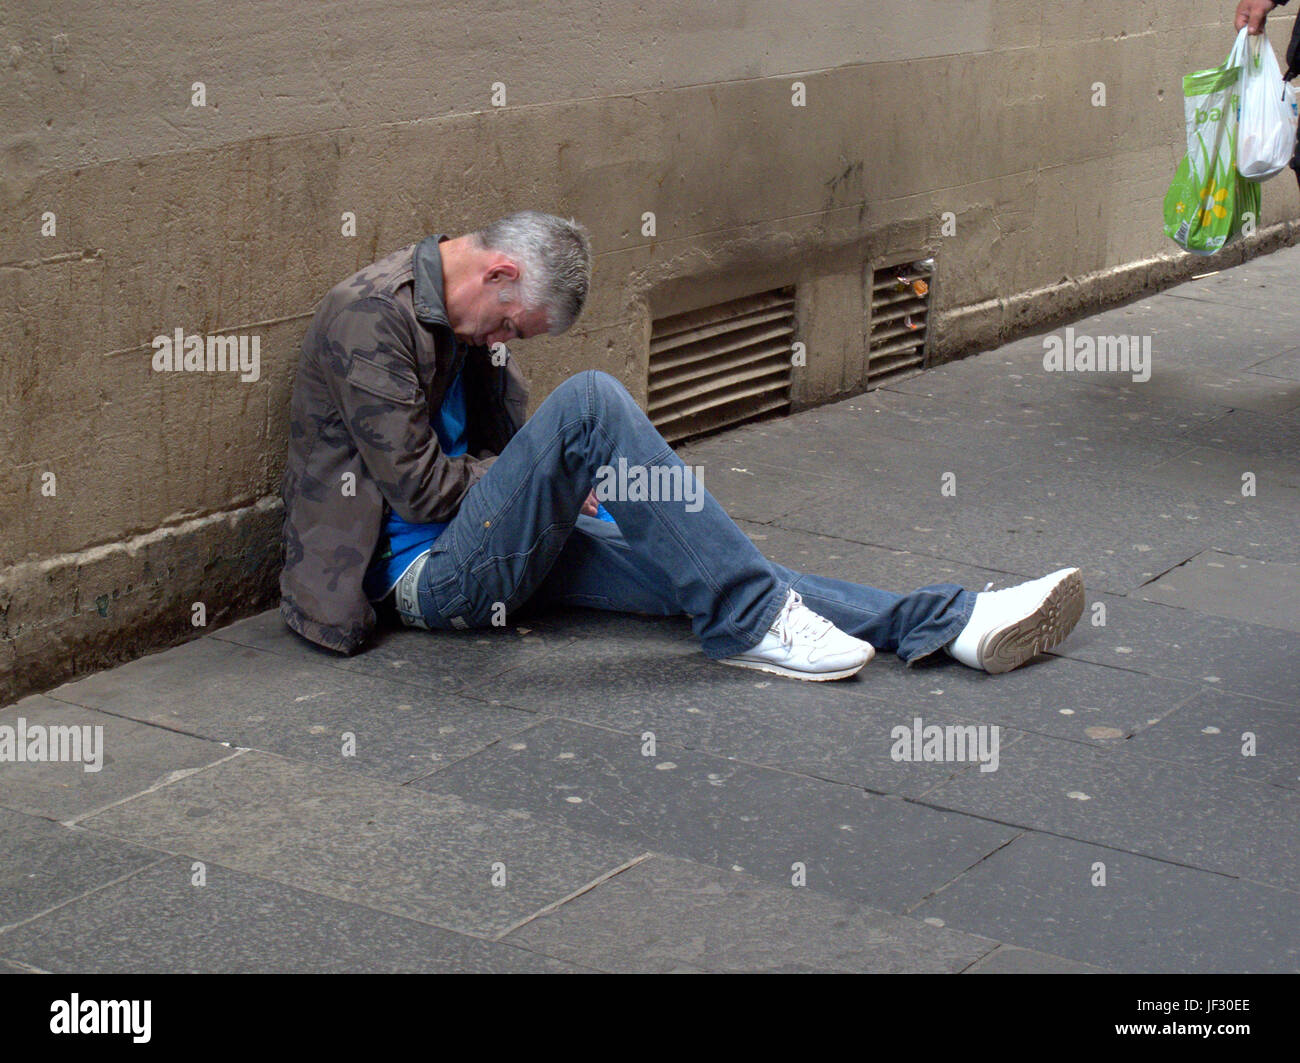 Zombie Droge Spice bettelnden Obdachlosen arbeitslosen Mann lag auf der Straße bewusstlos Stockfoto